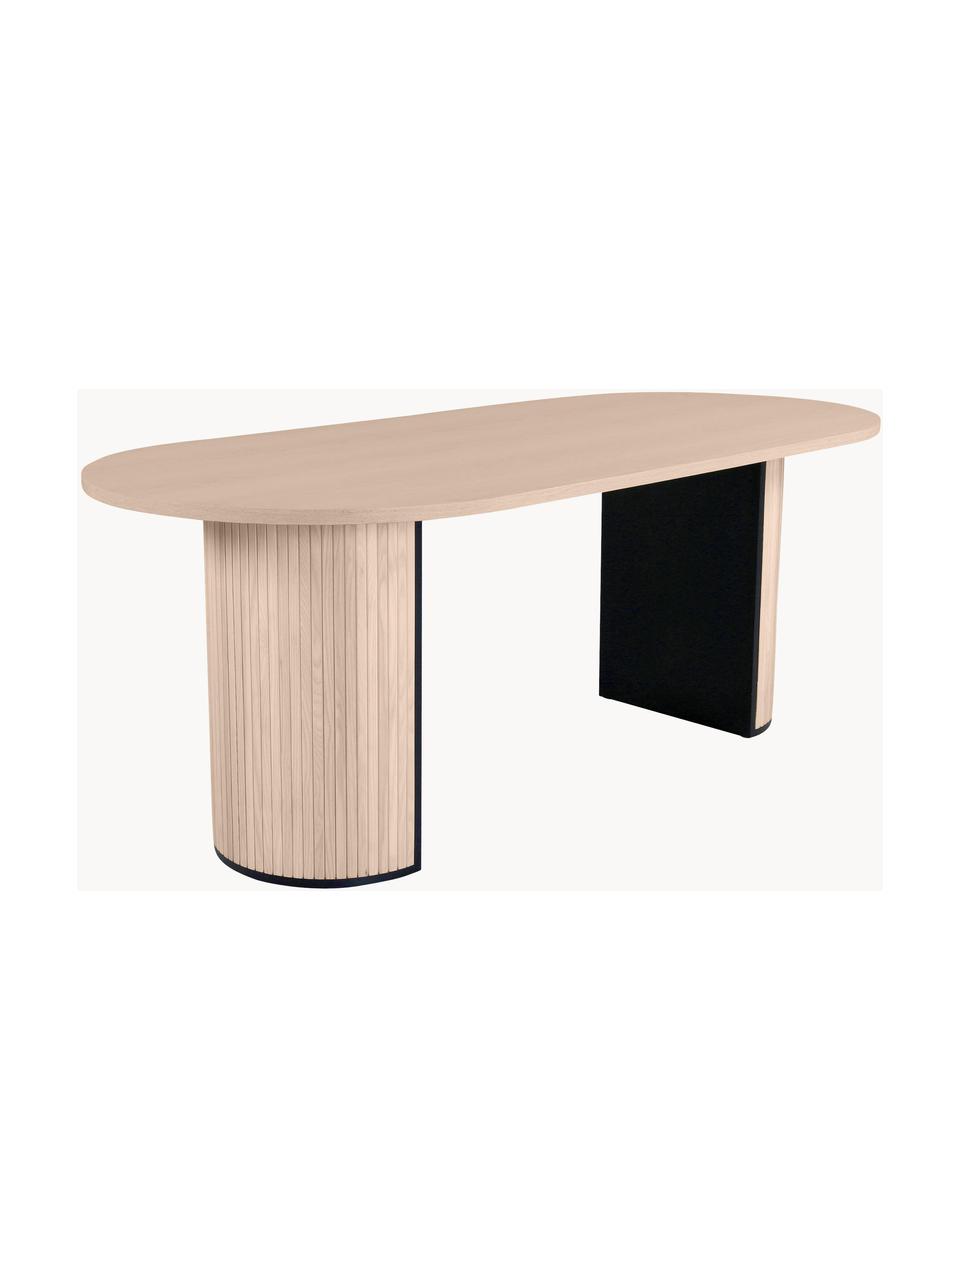 Oválny drevený jedálenský stôl Bianca, 200 x 90 cm, Dubové drevo, svetlé lakované, Š 200 x H 90 cm